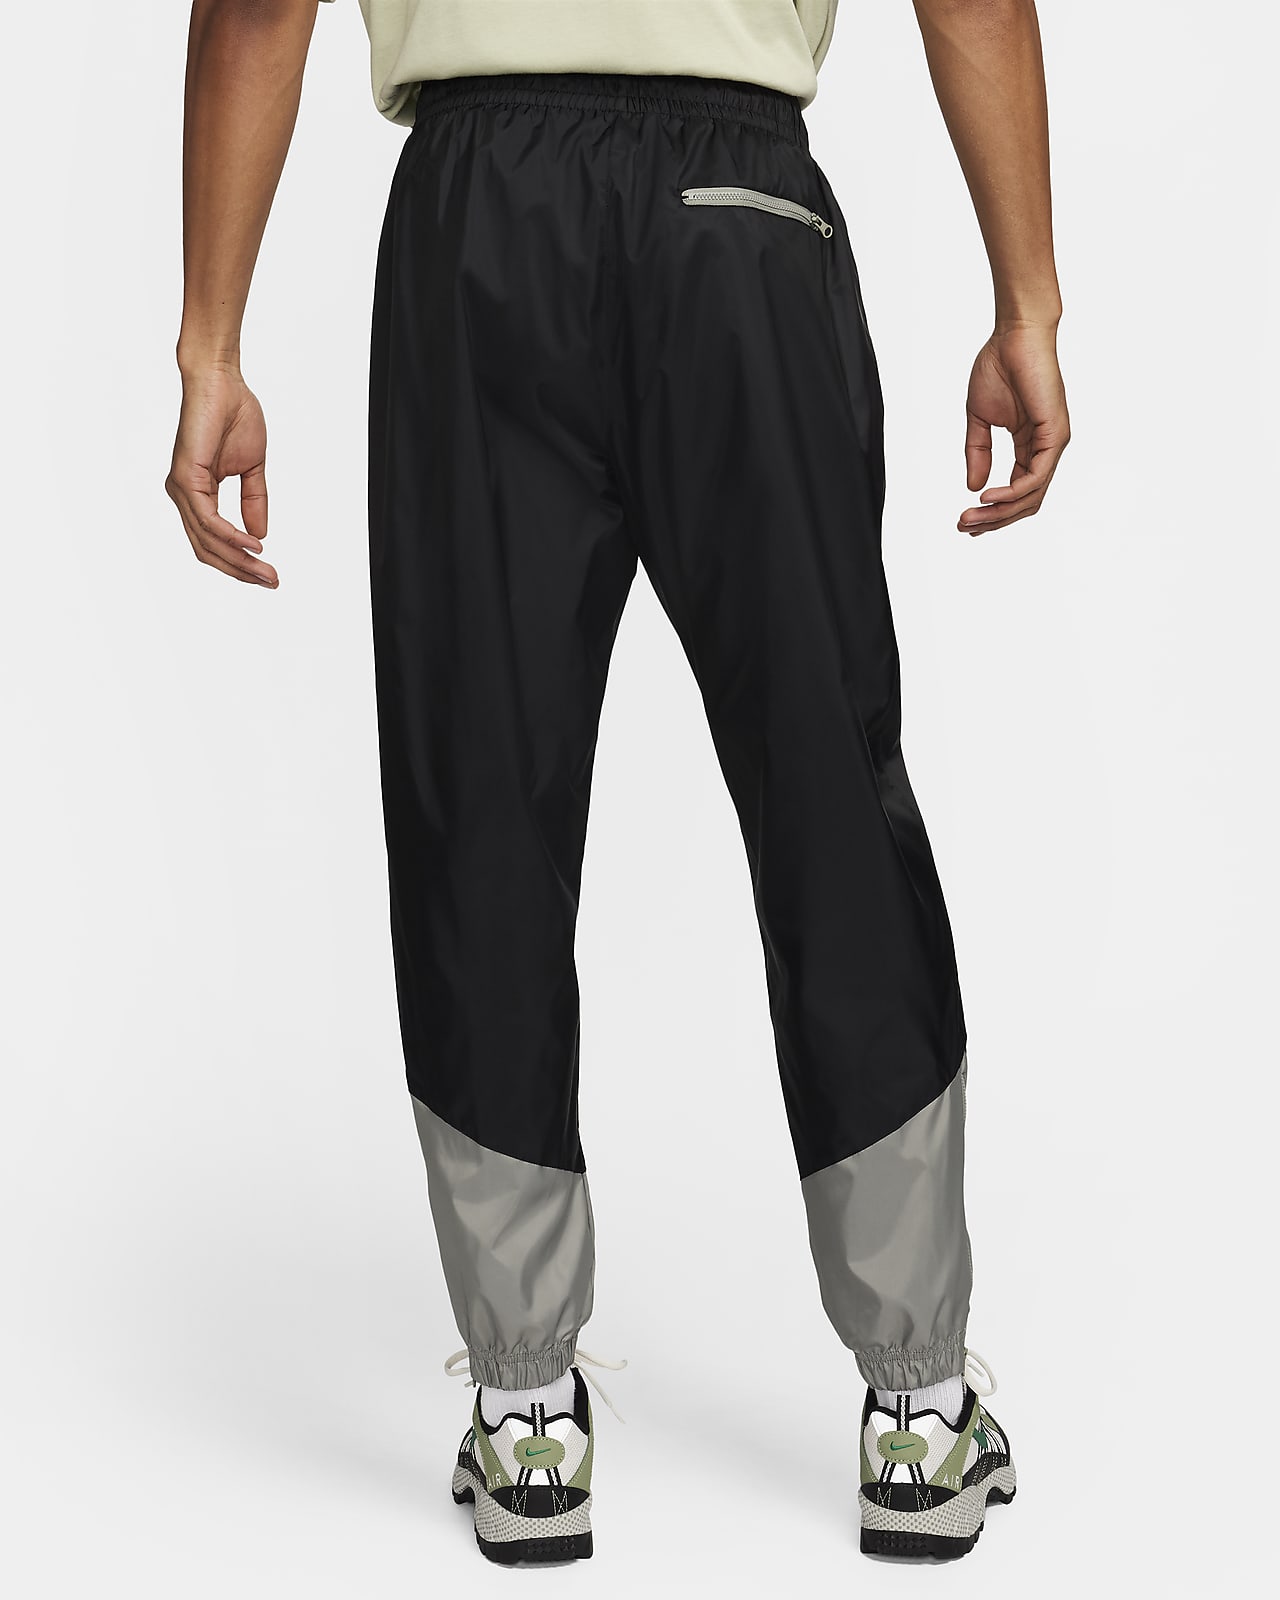 Nike Windrunner Men's Woven Lined Pants.